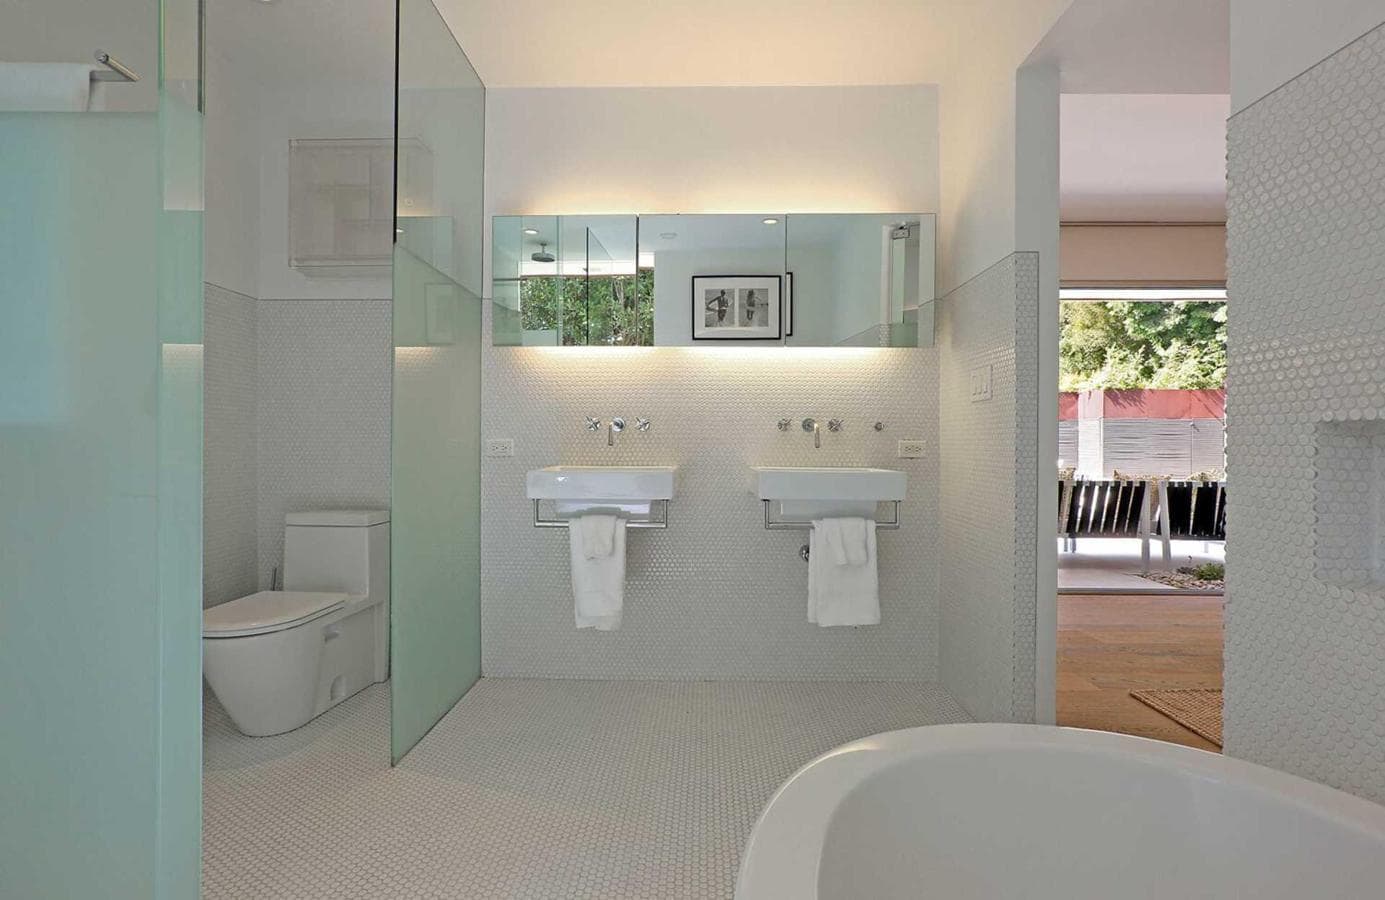 Cuarto de baño. Está revestido en pulcro azulejo blanco y los espacios están separados con cristal translúcido. Su diseño sigue la línea del resto de la vivienda, es moderno y minimalista